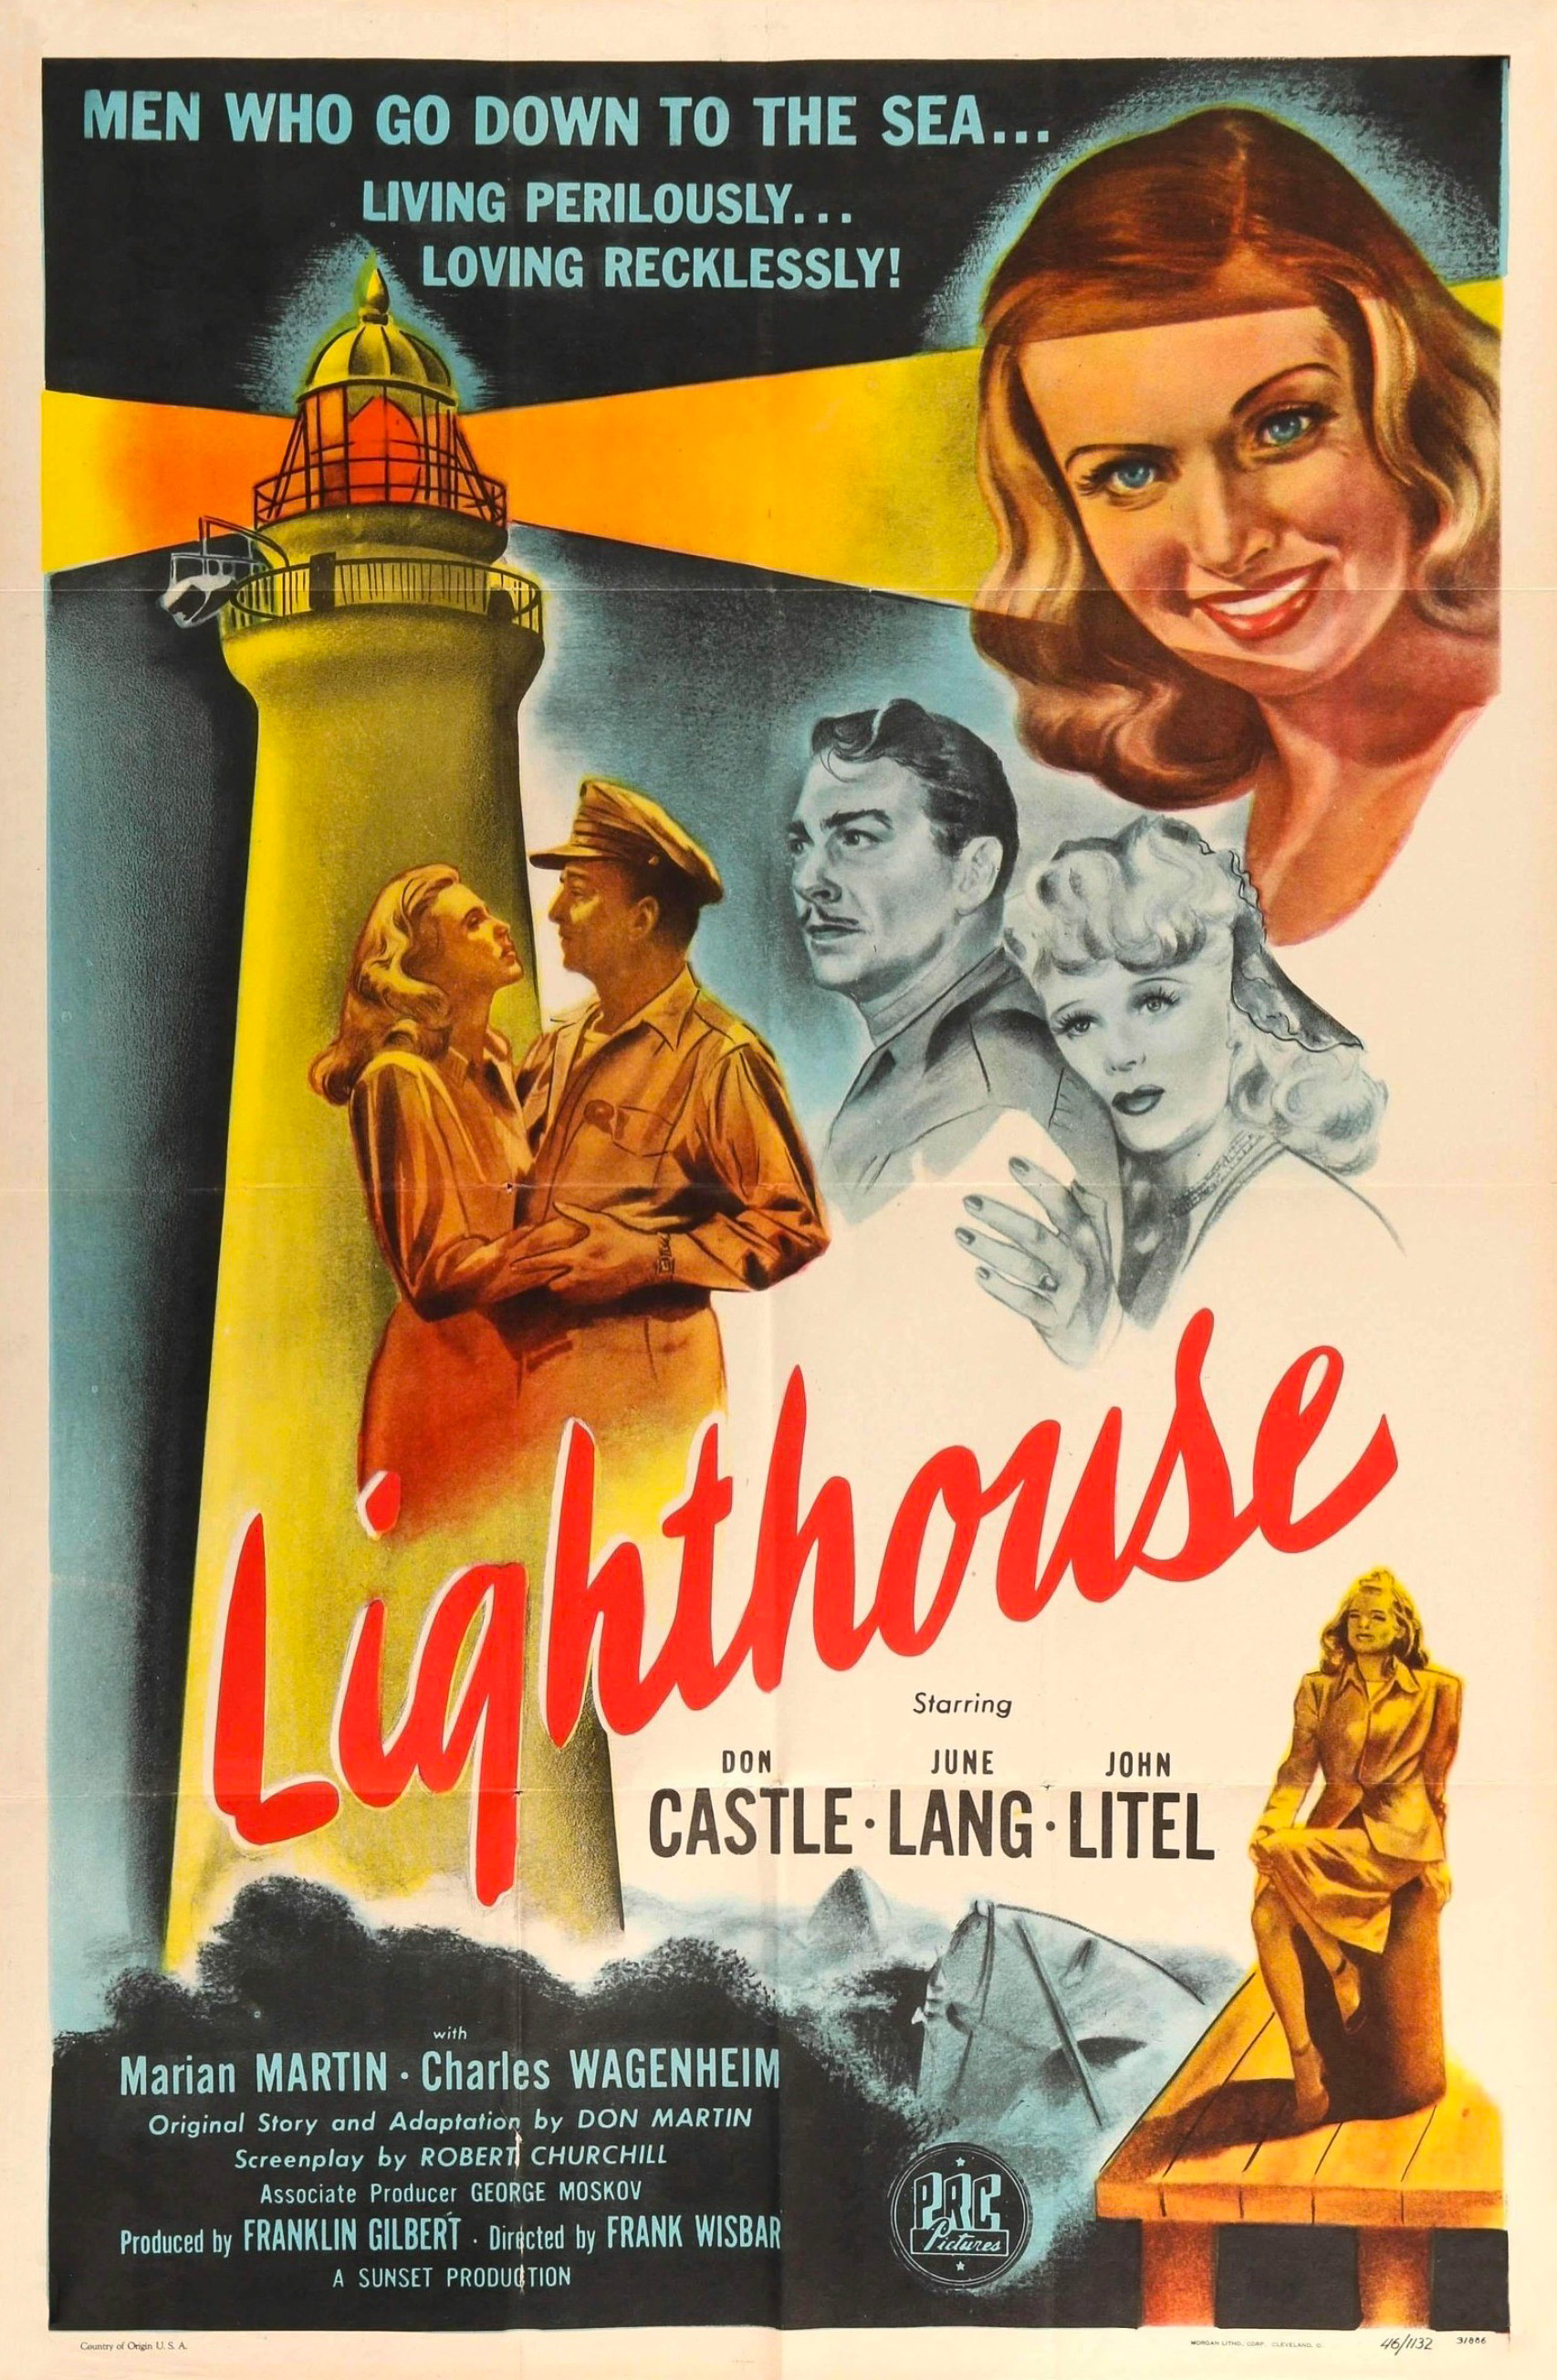 Lighthouse (1947) Screenshot 1 